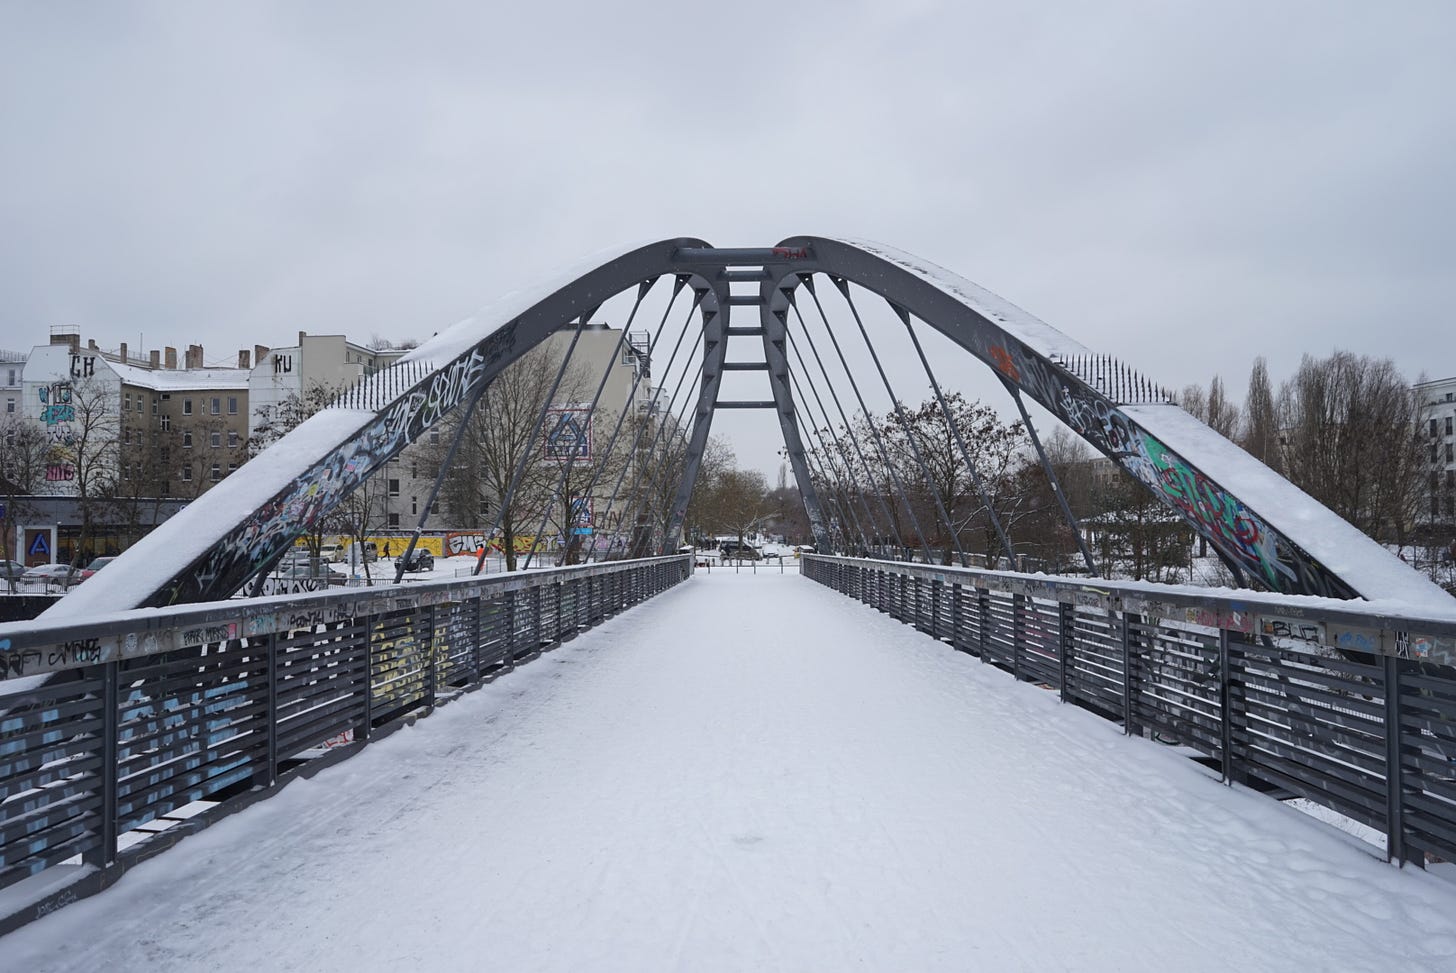  Imagem de uma ponte arqueada coberta de neve com corrimões metálicos grafitados. Edifícios ao fundo sob um céu nublado.